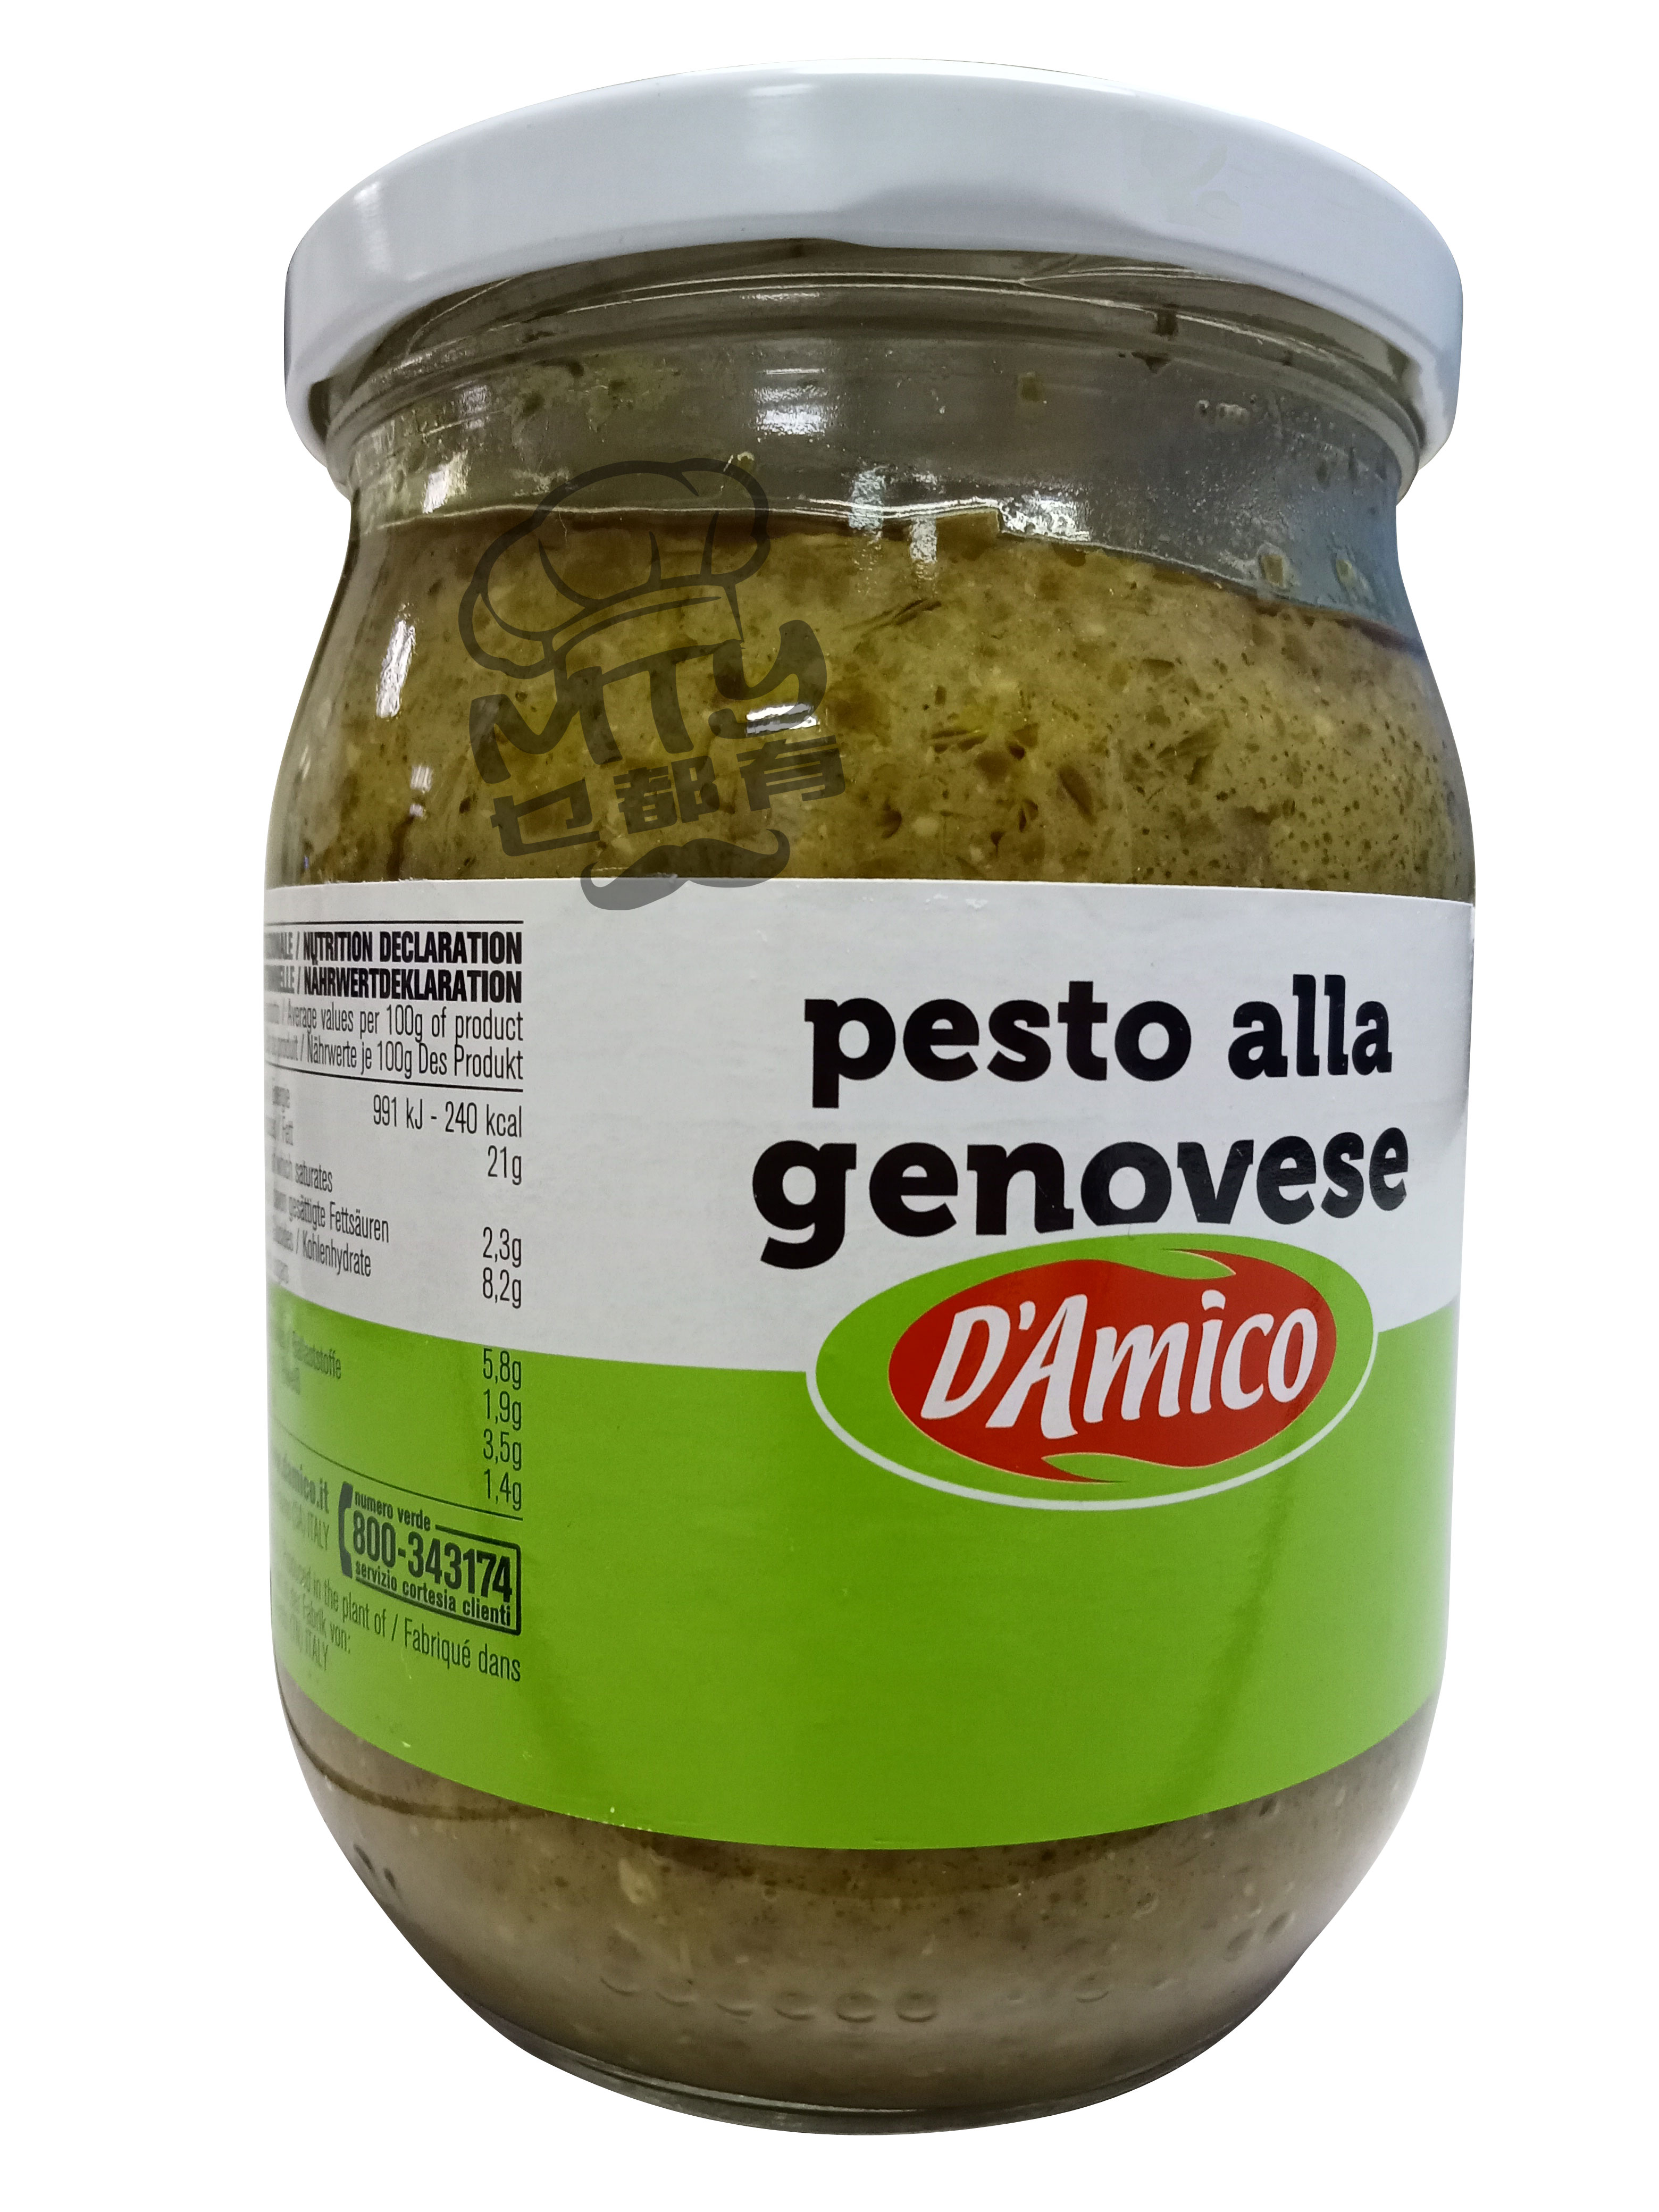 DAMICO Pesto (Alla) Sauce 500g